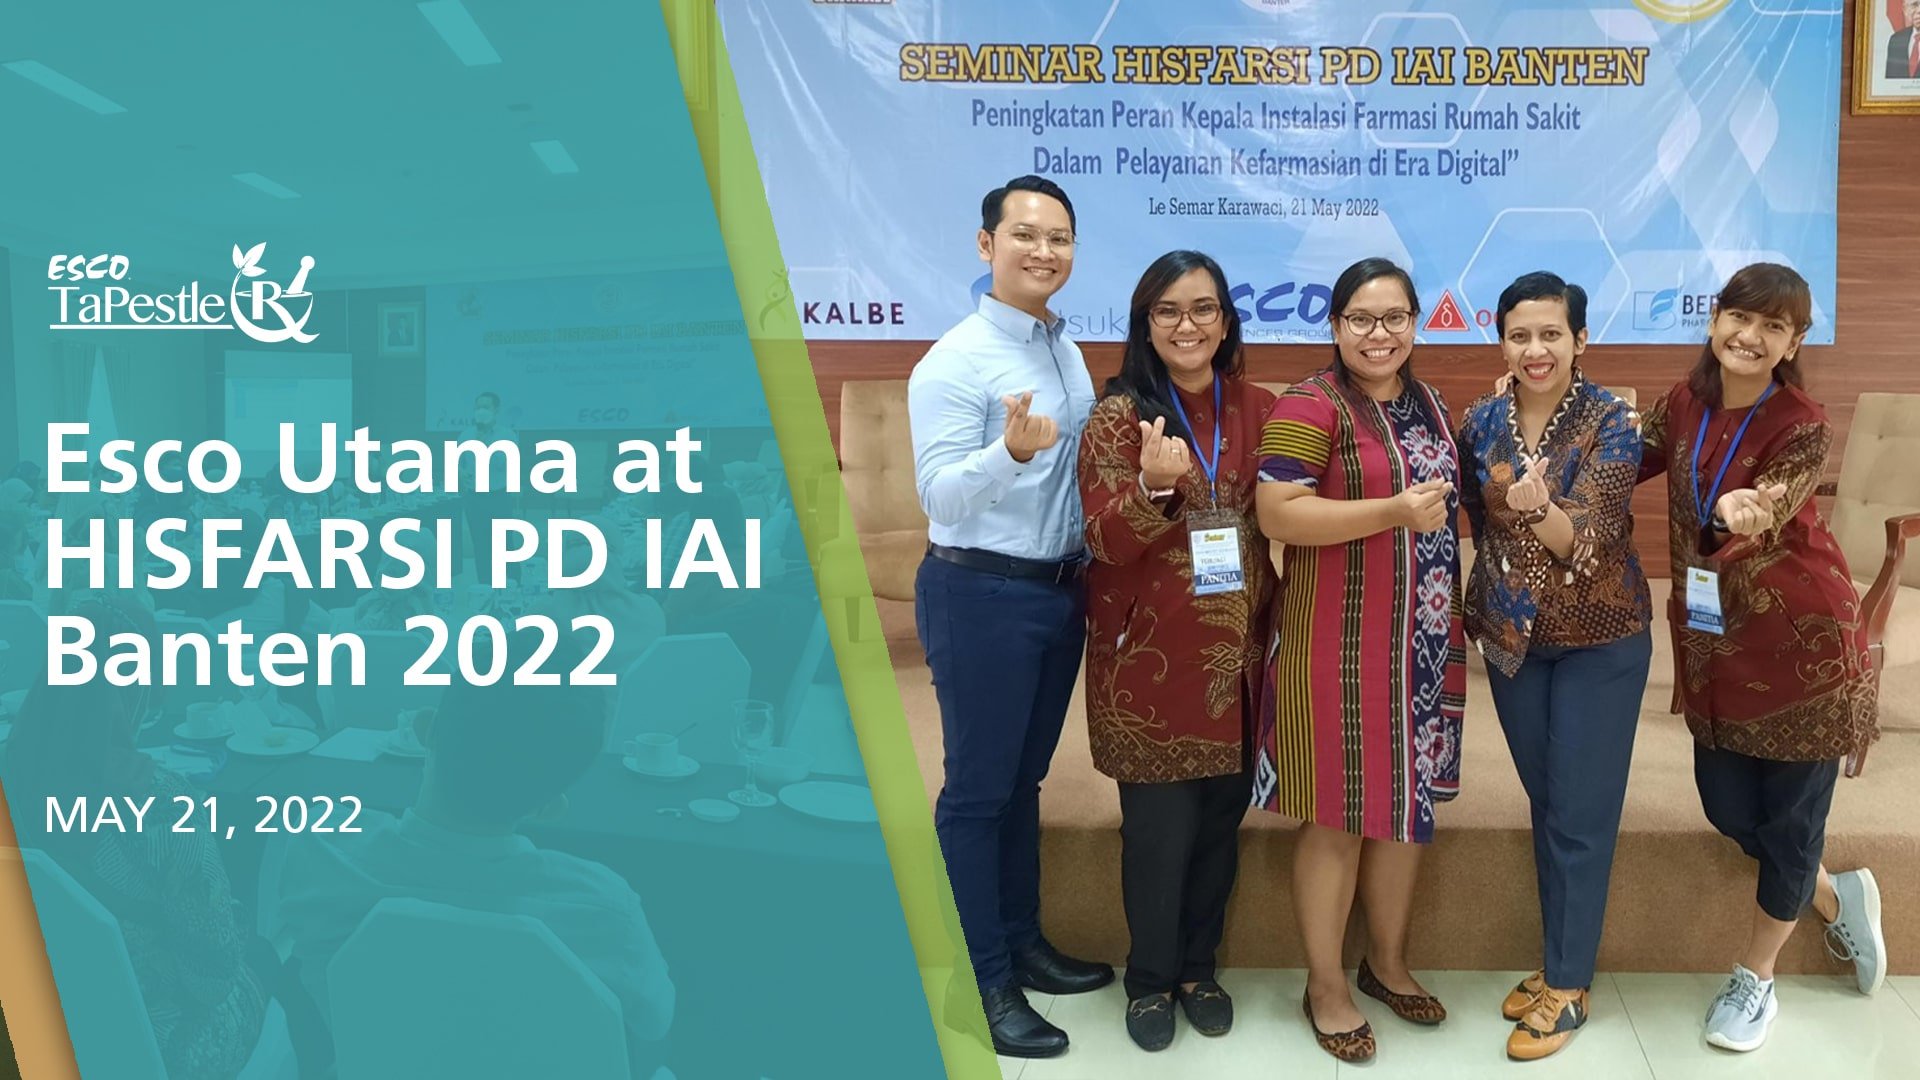 Esco Utama at HISFARI PD IAI Banten 2022